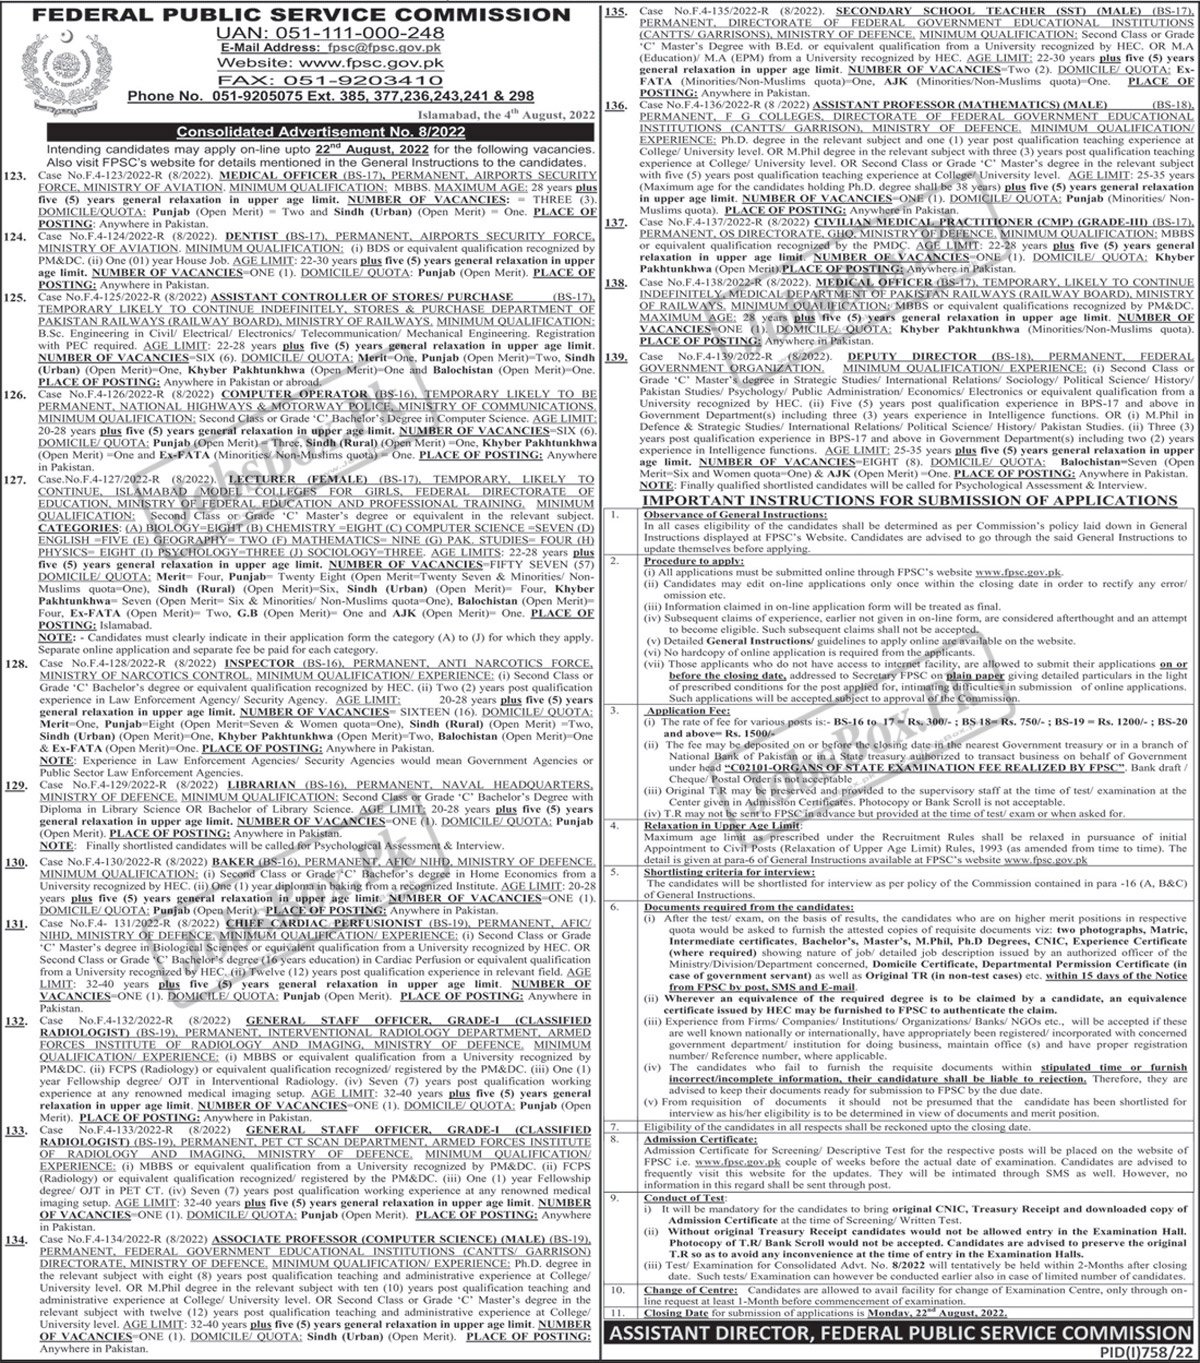 FPSC Jobs 2022 Advertisement No. 08/2022 - FPSC New Jobs 2022 - FPSC Latest Jobs 2022 - Federal Public Service Commission Jobs 2022